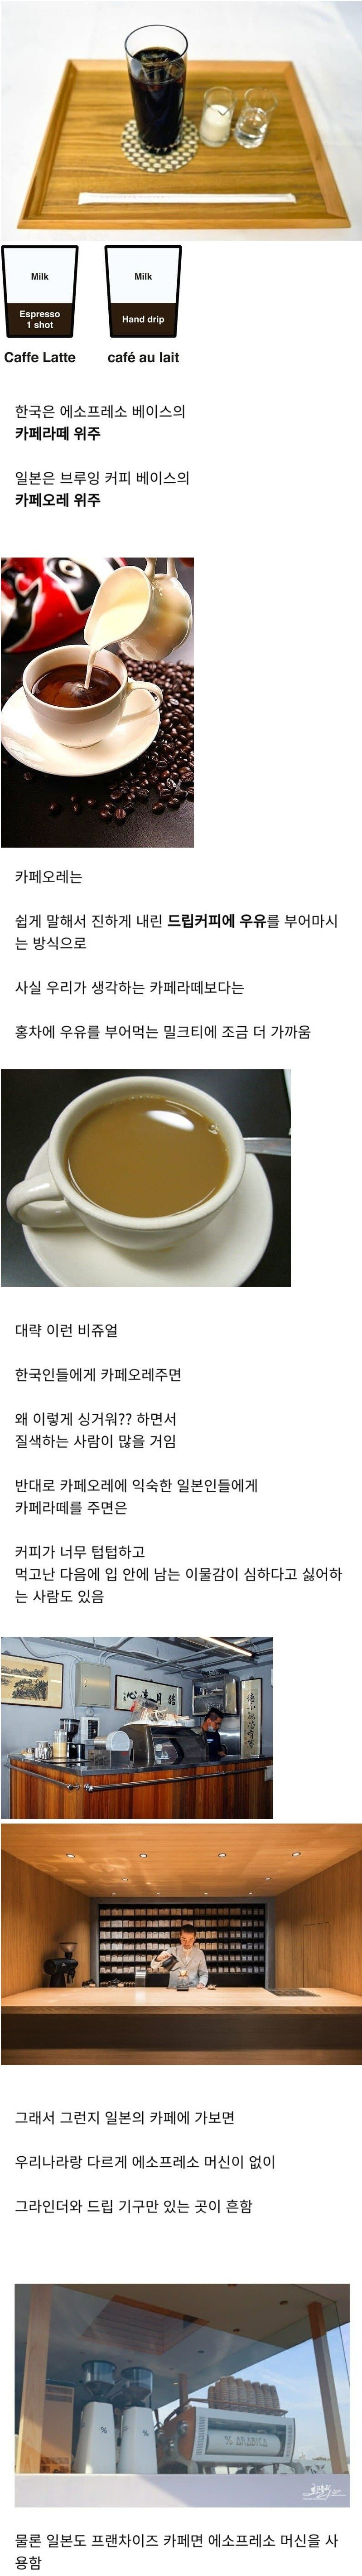 한국과 일본의 커피차이.jpg